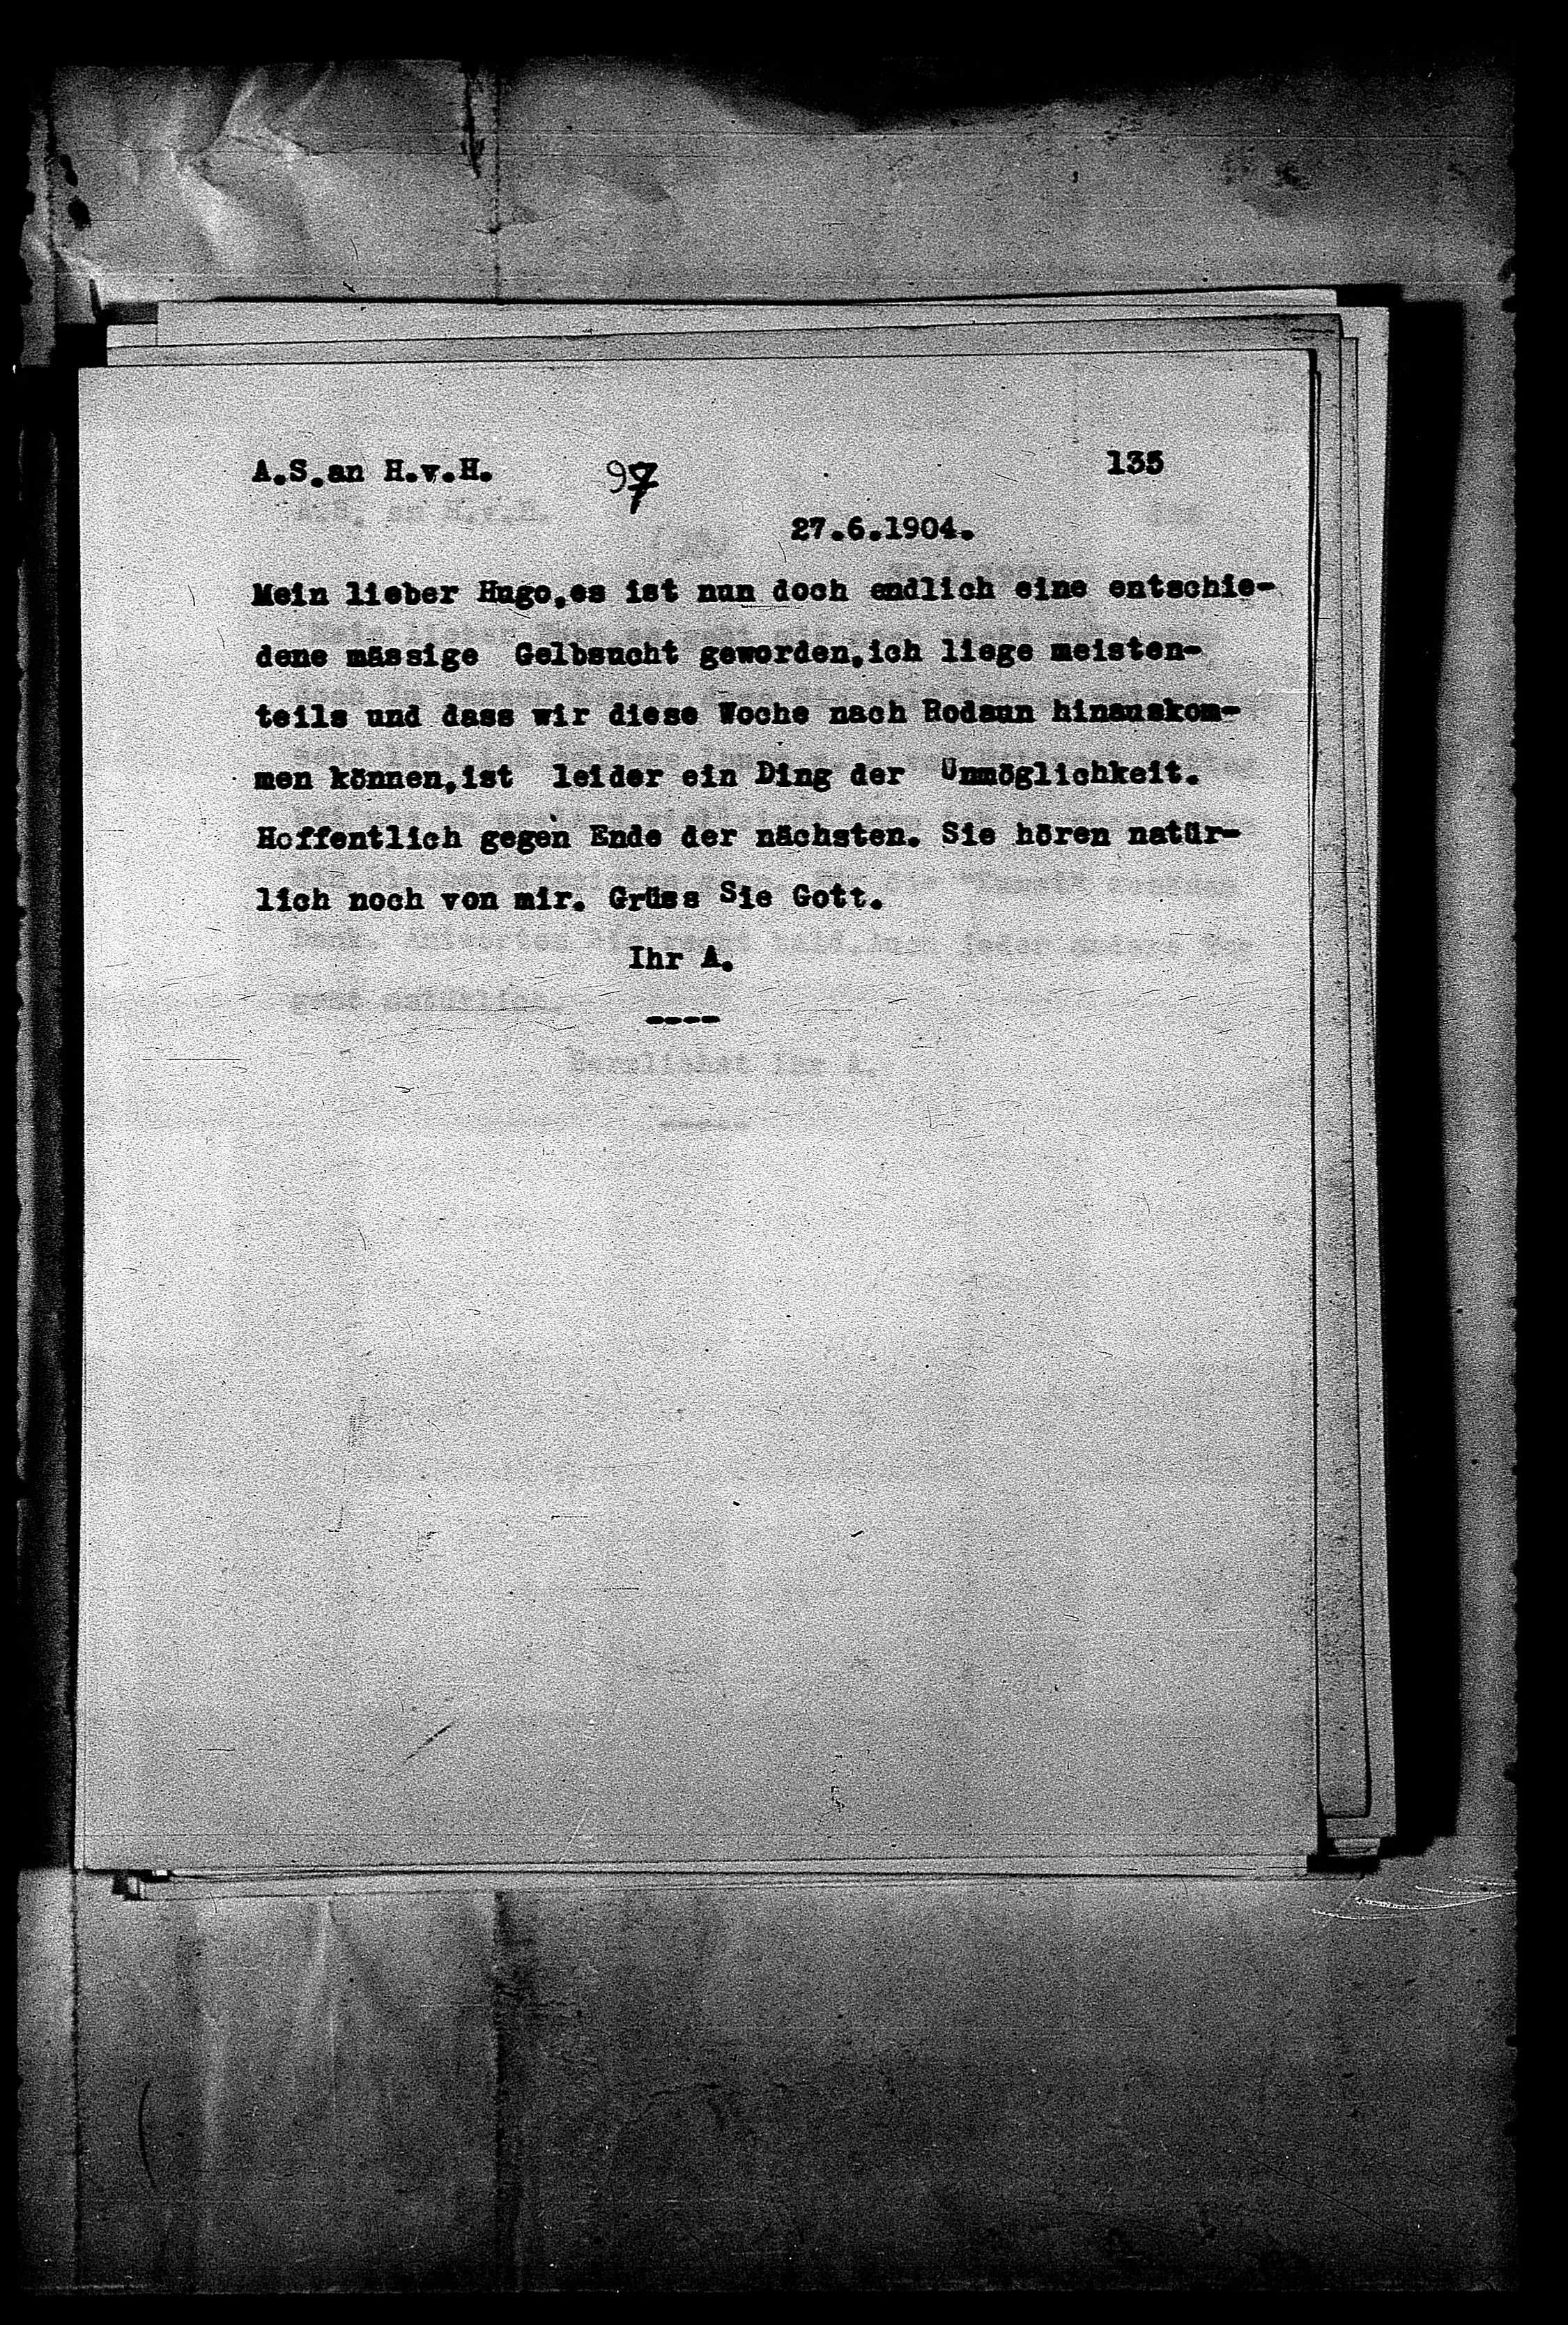 Vorschaubild für Hofmannsthal, Hugo von_AS an HvH Abschrift, HvH an AS, Originale (Mikrofilm 38), Seite 141